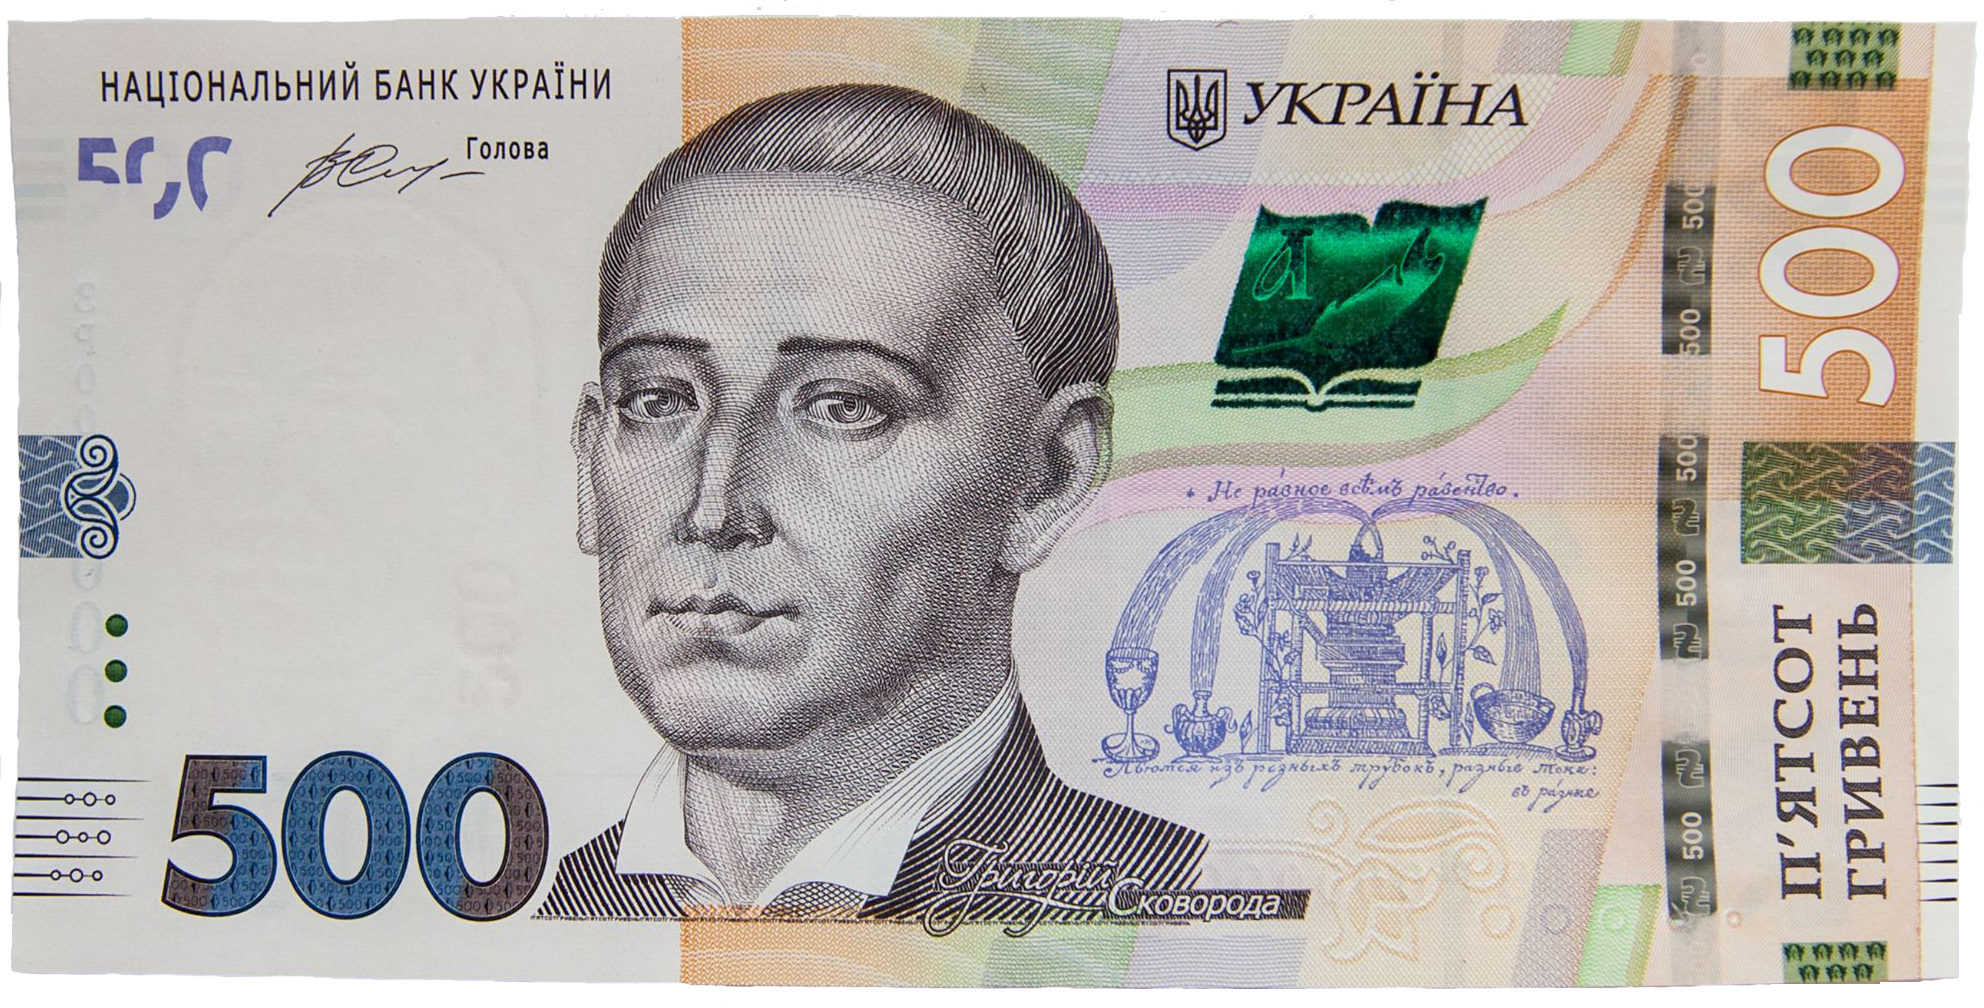 НБУ, 500 гривен, подпись Смолия